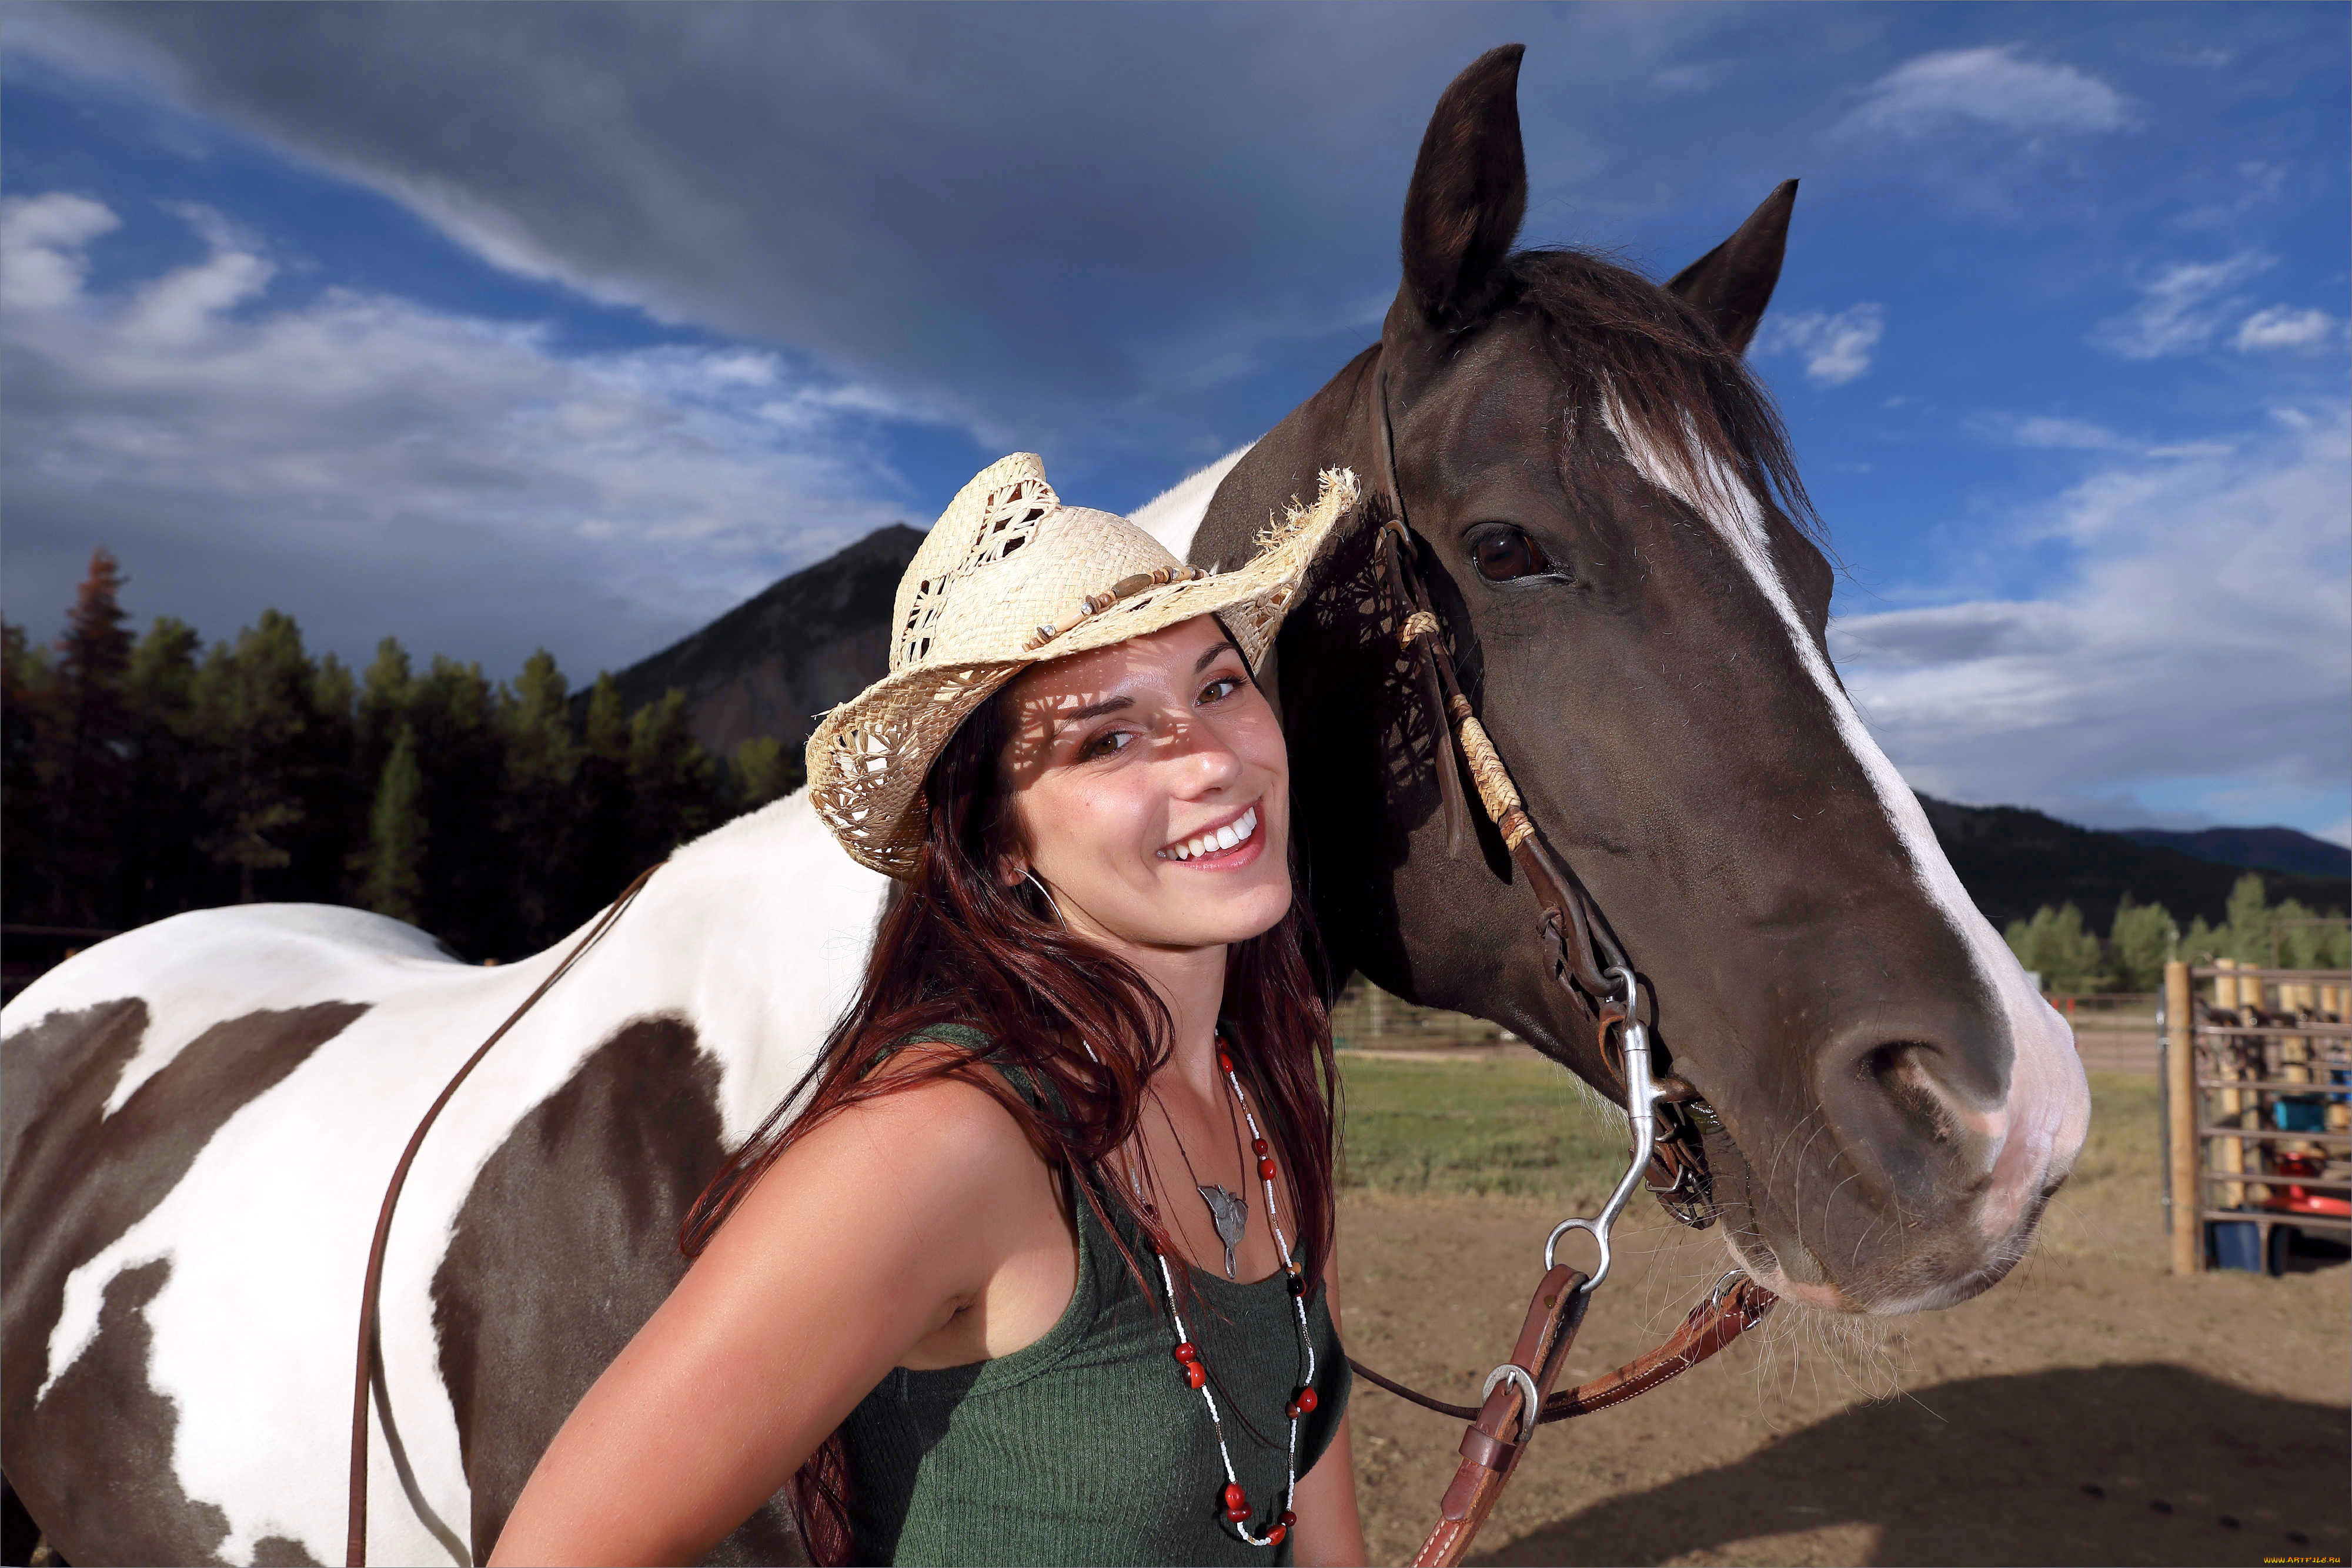 Girl elena. Лошадиная улыбка у девушек. Актриса с лошадиной улыбкой. Девушка на коне улыбается. Улыбающиеся девушки на лошадях.